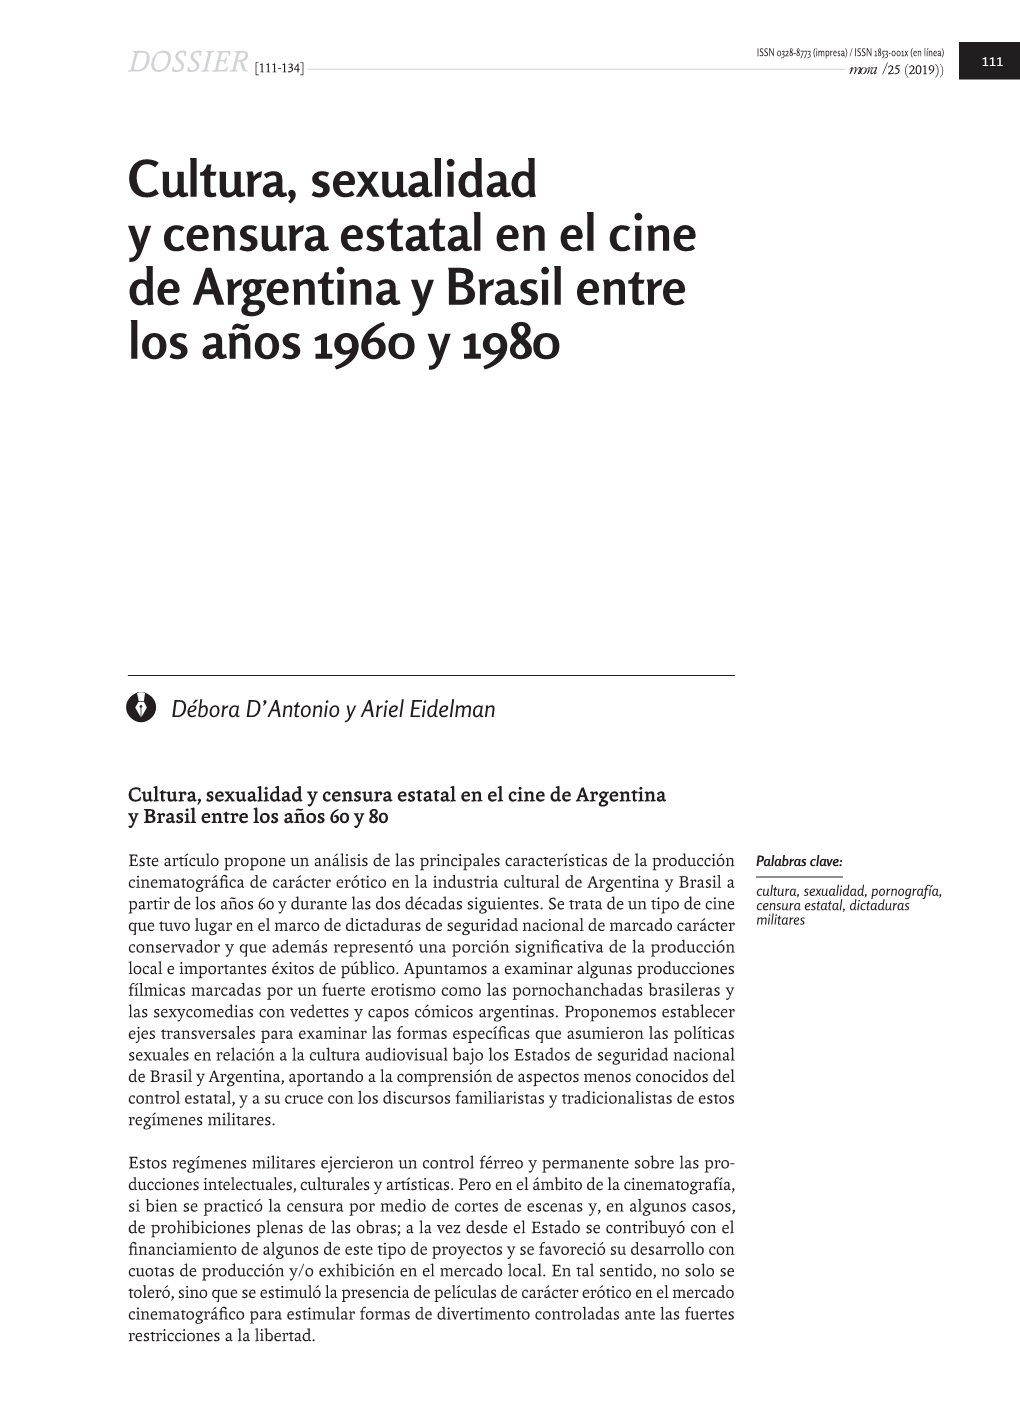 Cultura, Sexualidad Y Censura Estatal En El Cine De Argentina Y Brasil Entre Los Años 1960 Y 1980